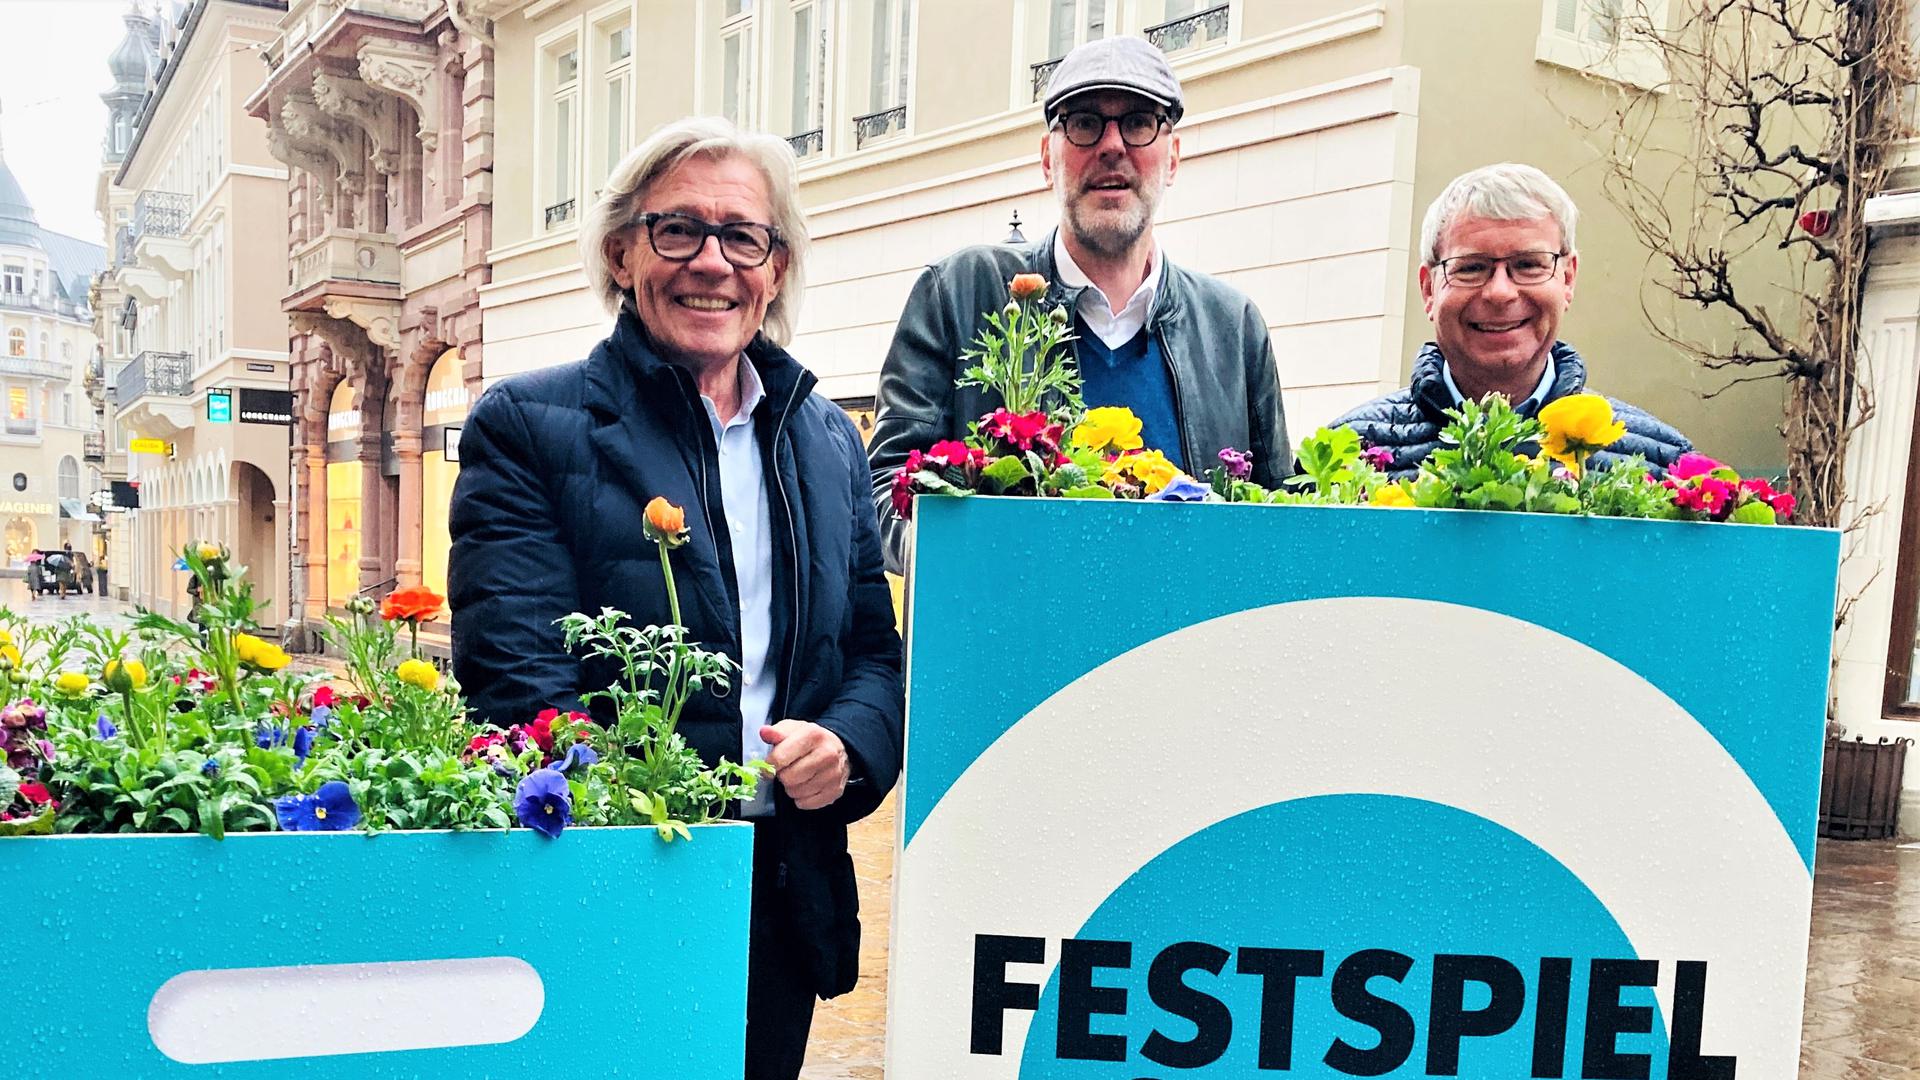 Einzelhändler Franz-Bernhard Wagener (von links), Festspielhausintendant Benedikt Stampa und Gartenbauamtschef Markus Brunsing stehen vor einer Blumentasche in der Fußgängerzone. 